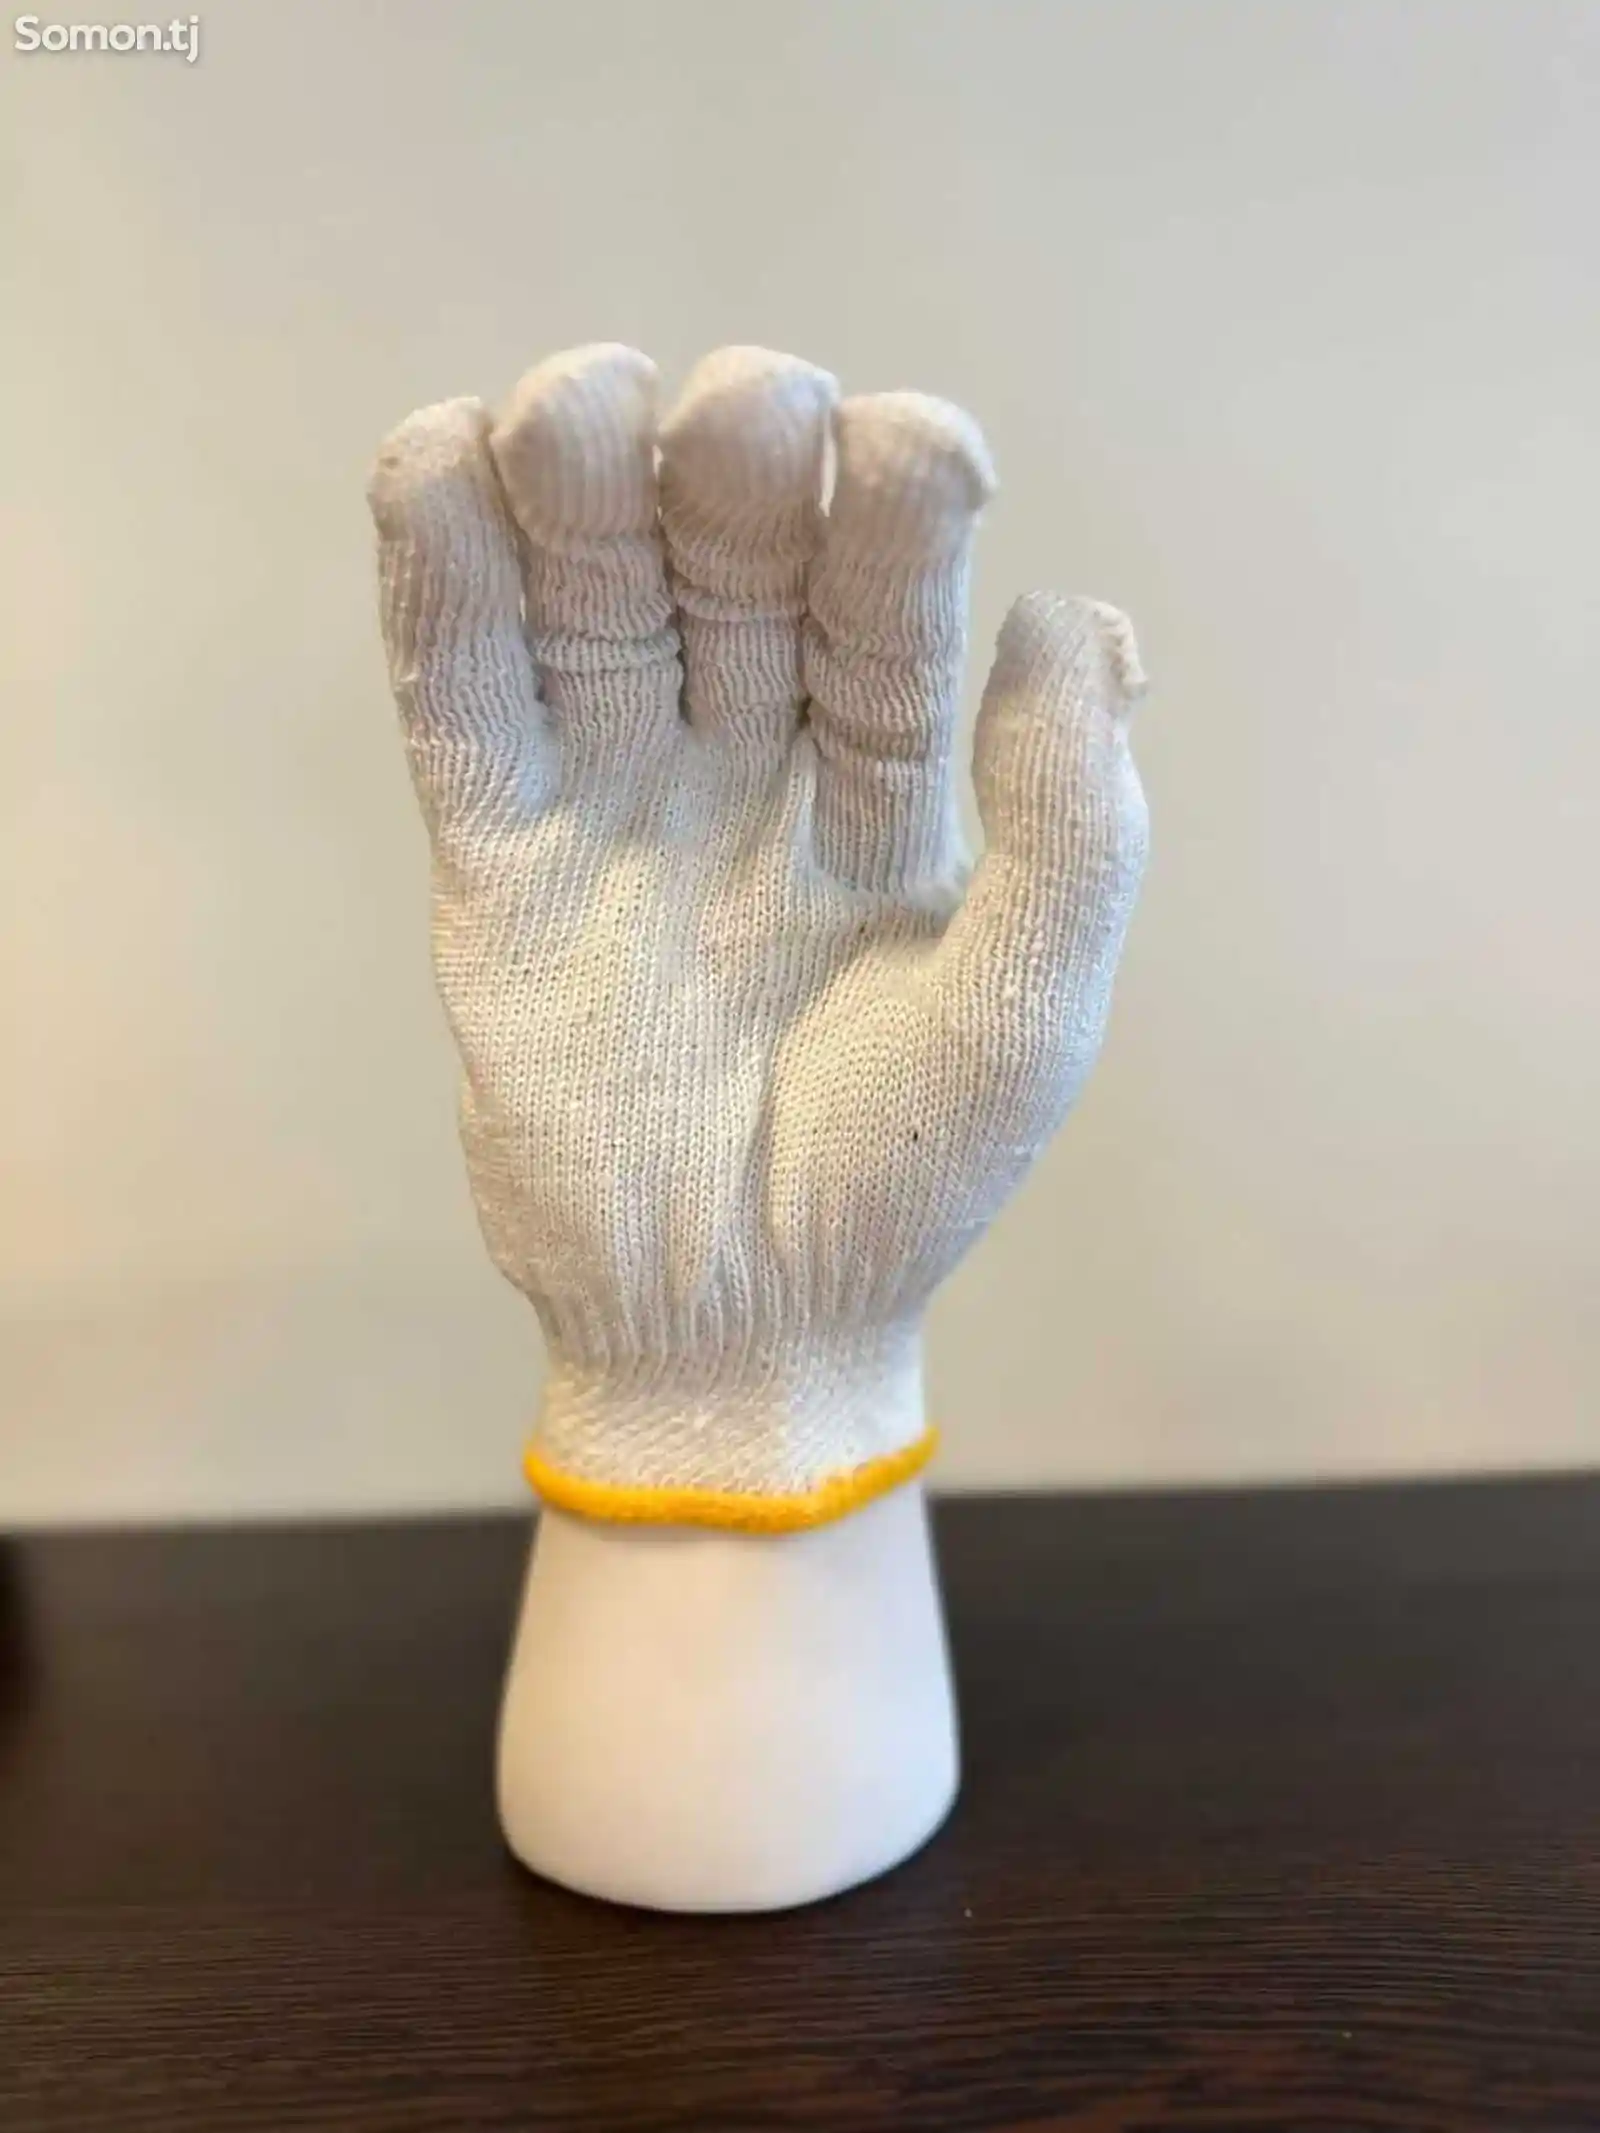 Защитите свои руки с профессиональными строительными перчатками-12